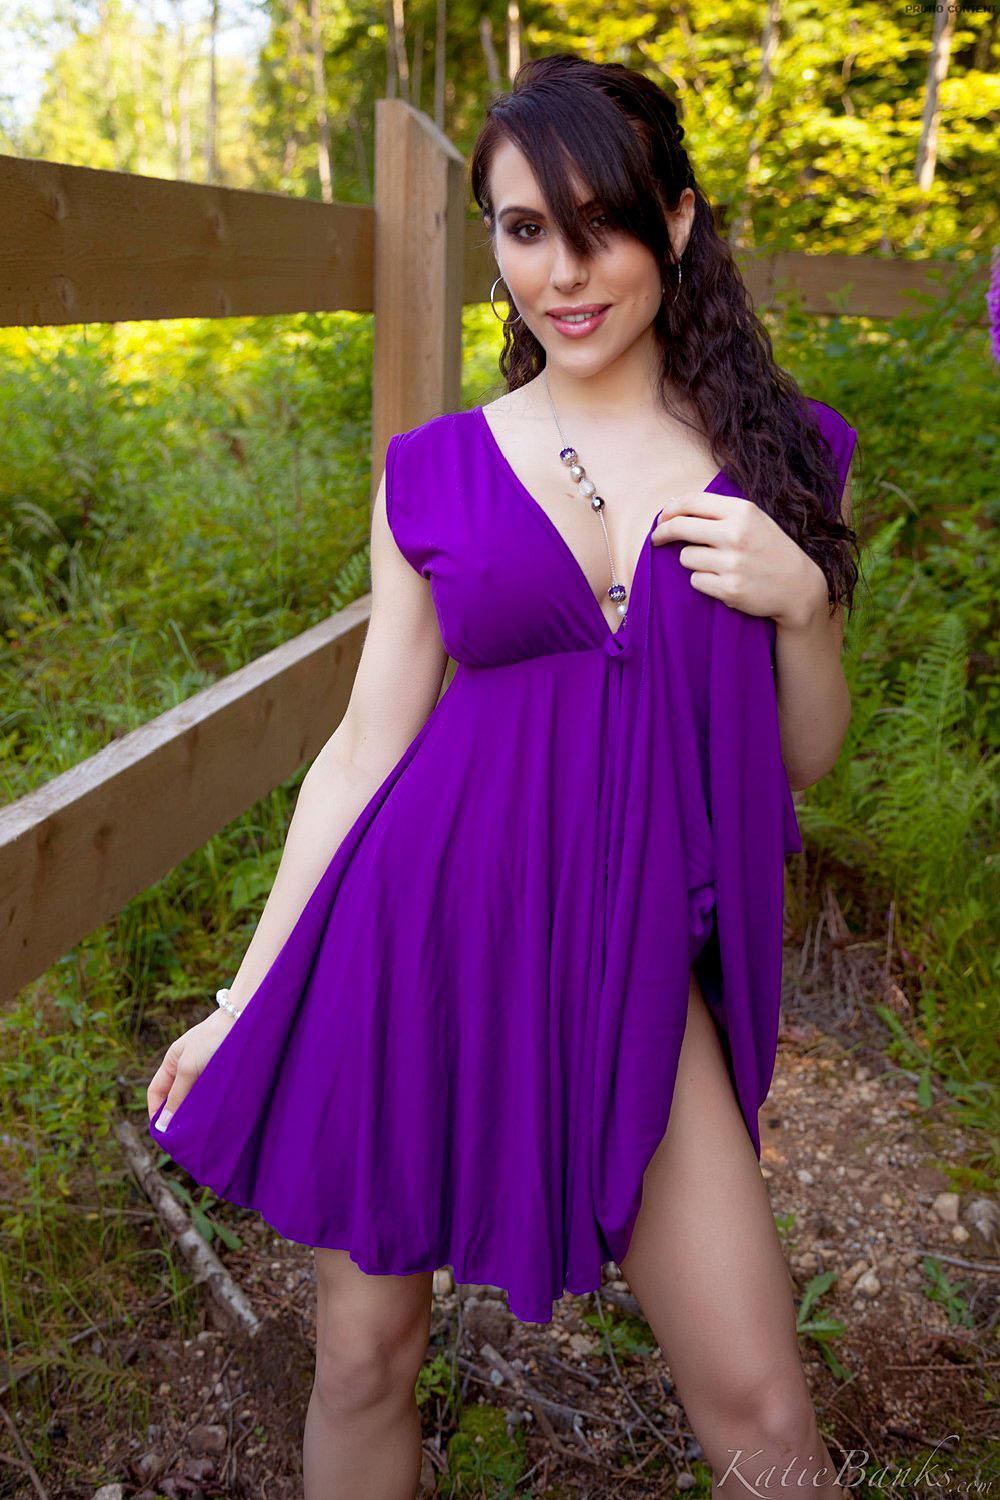 紫色のドレスを脱ぎ捨てたセクシーなケイティ・バンクス。
 #58097505